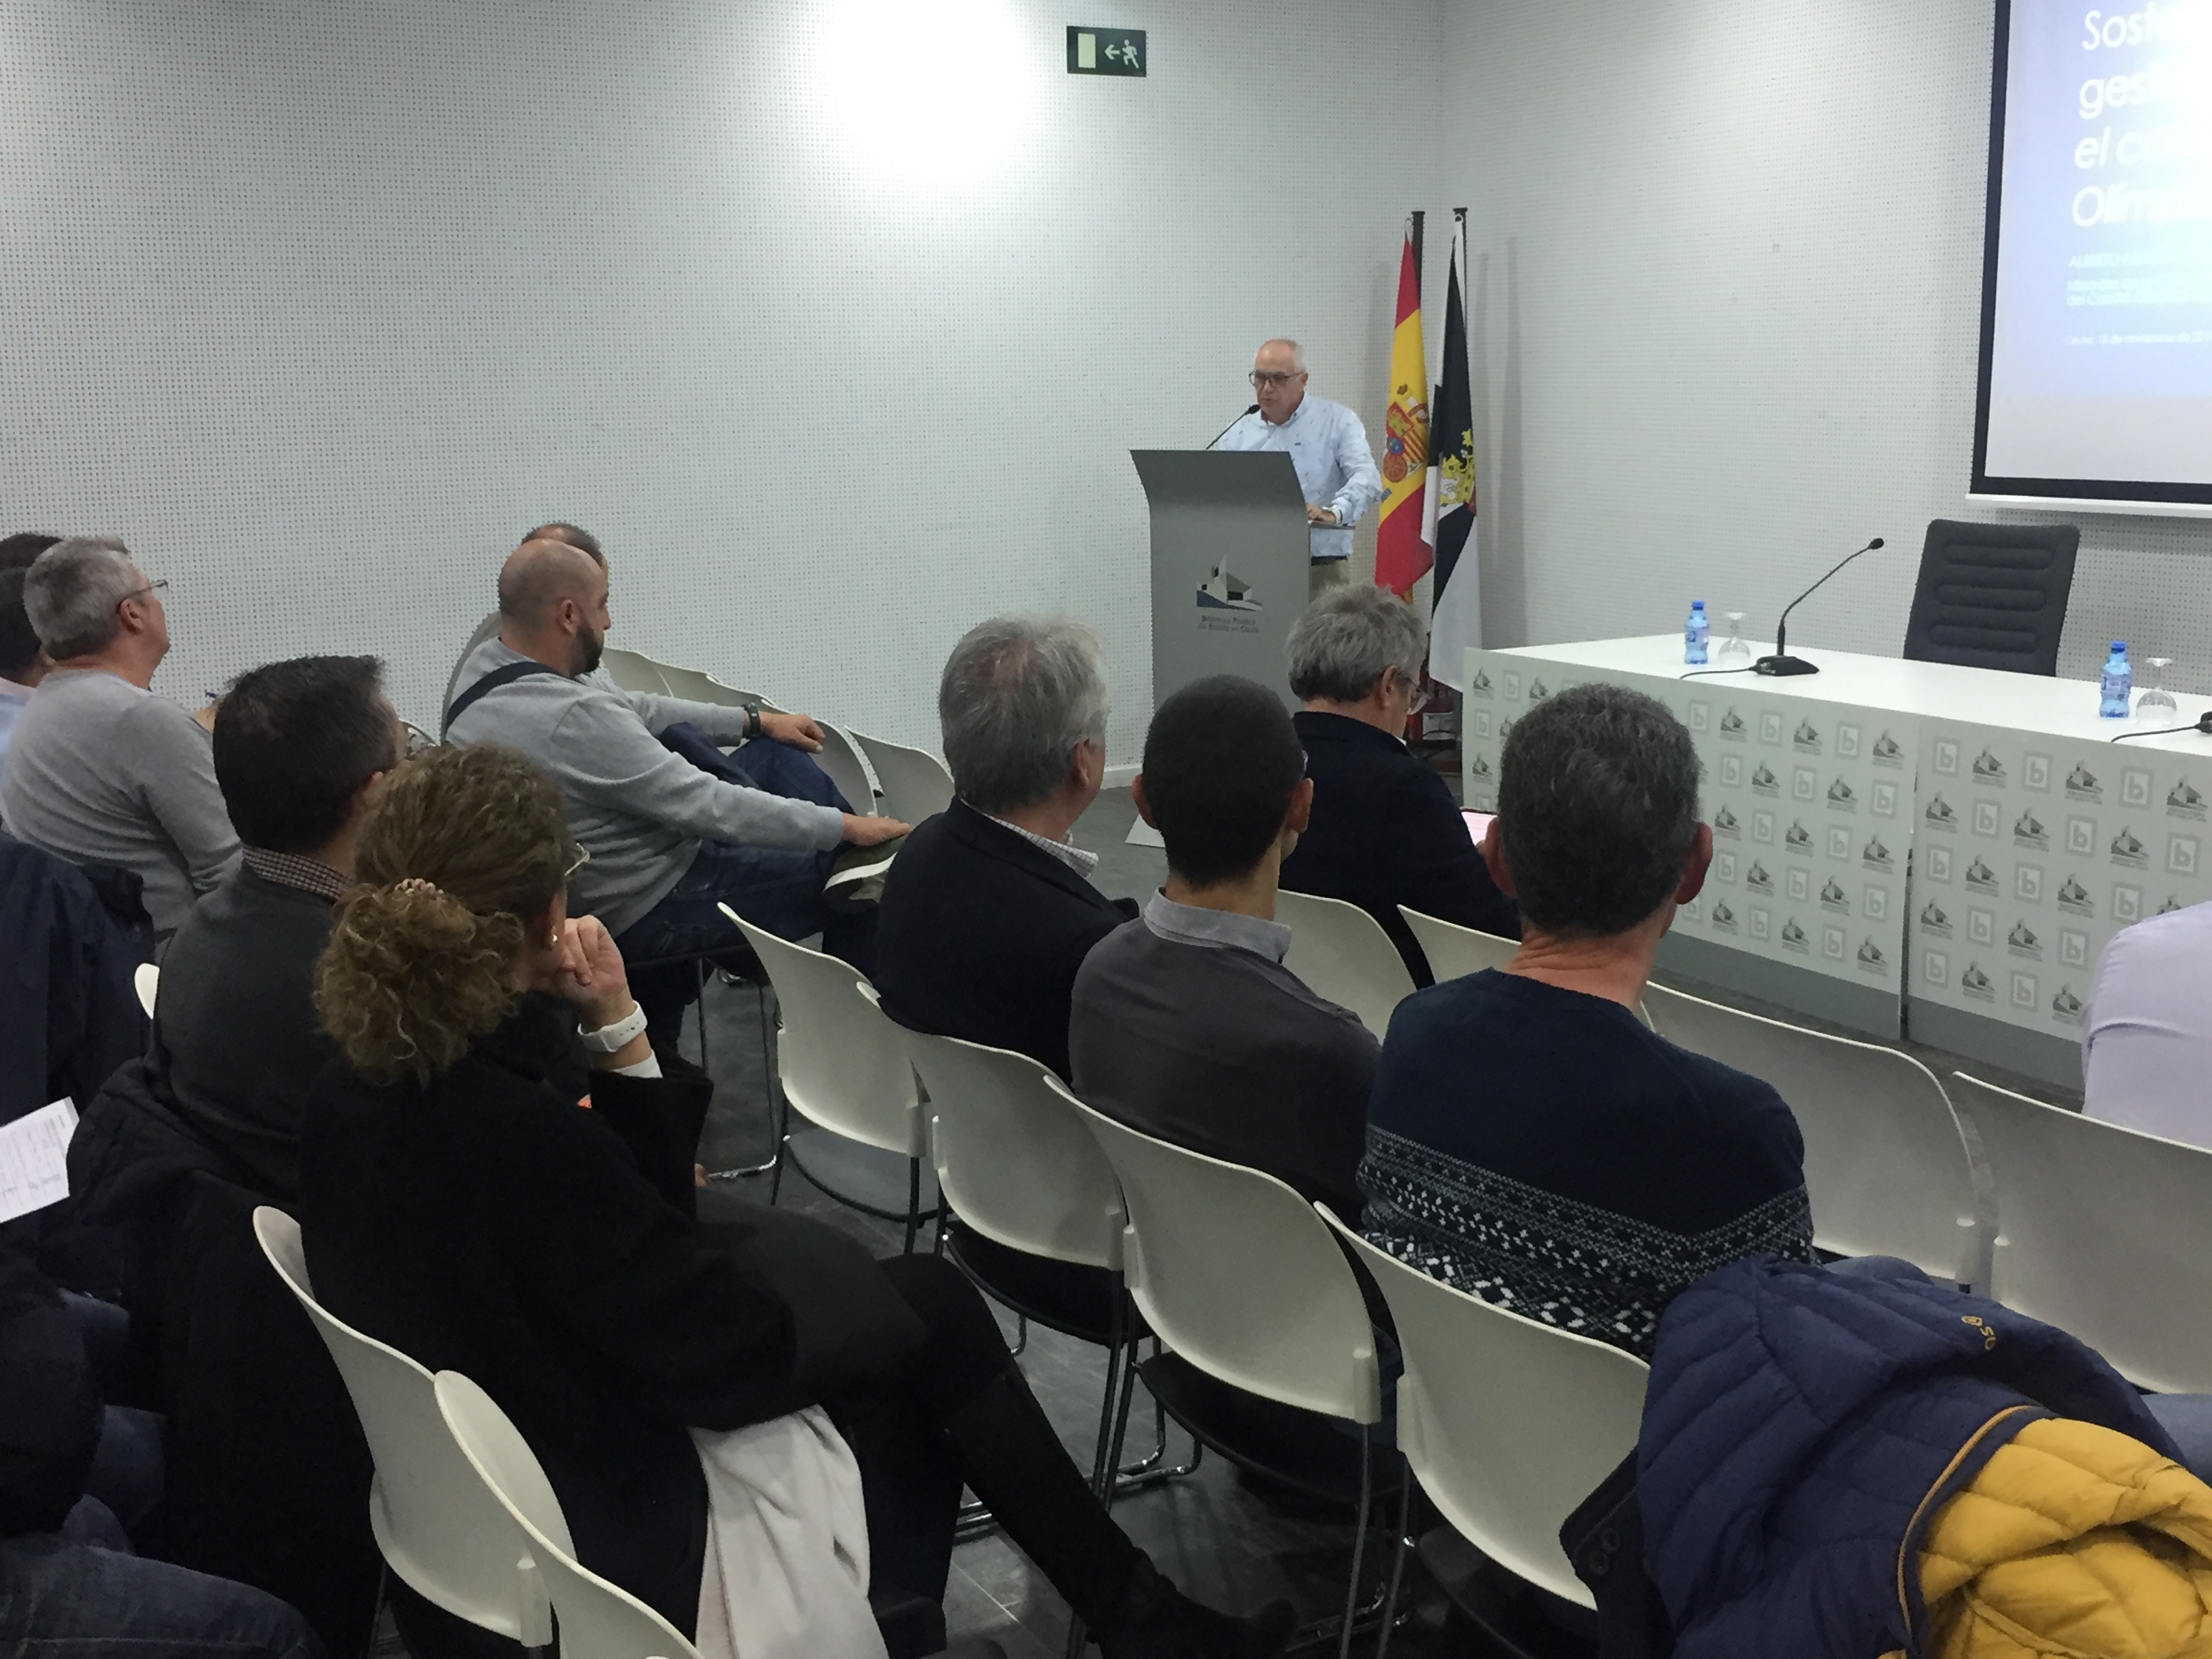 La Fundación Baleària organiza una jornada sobre gestión ética y sostenible en Ceuta